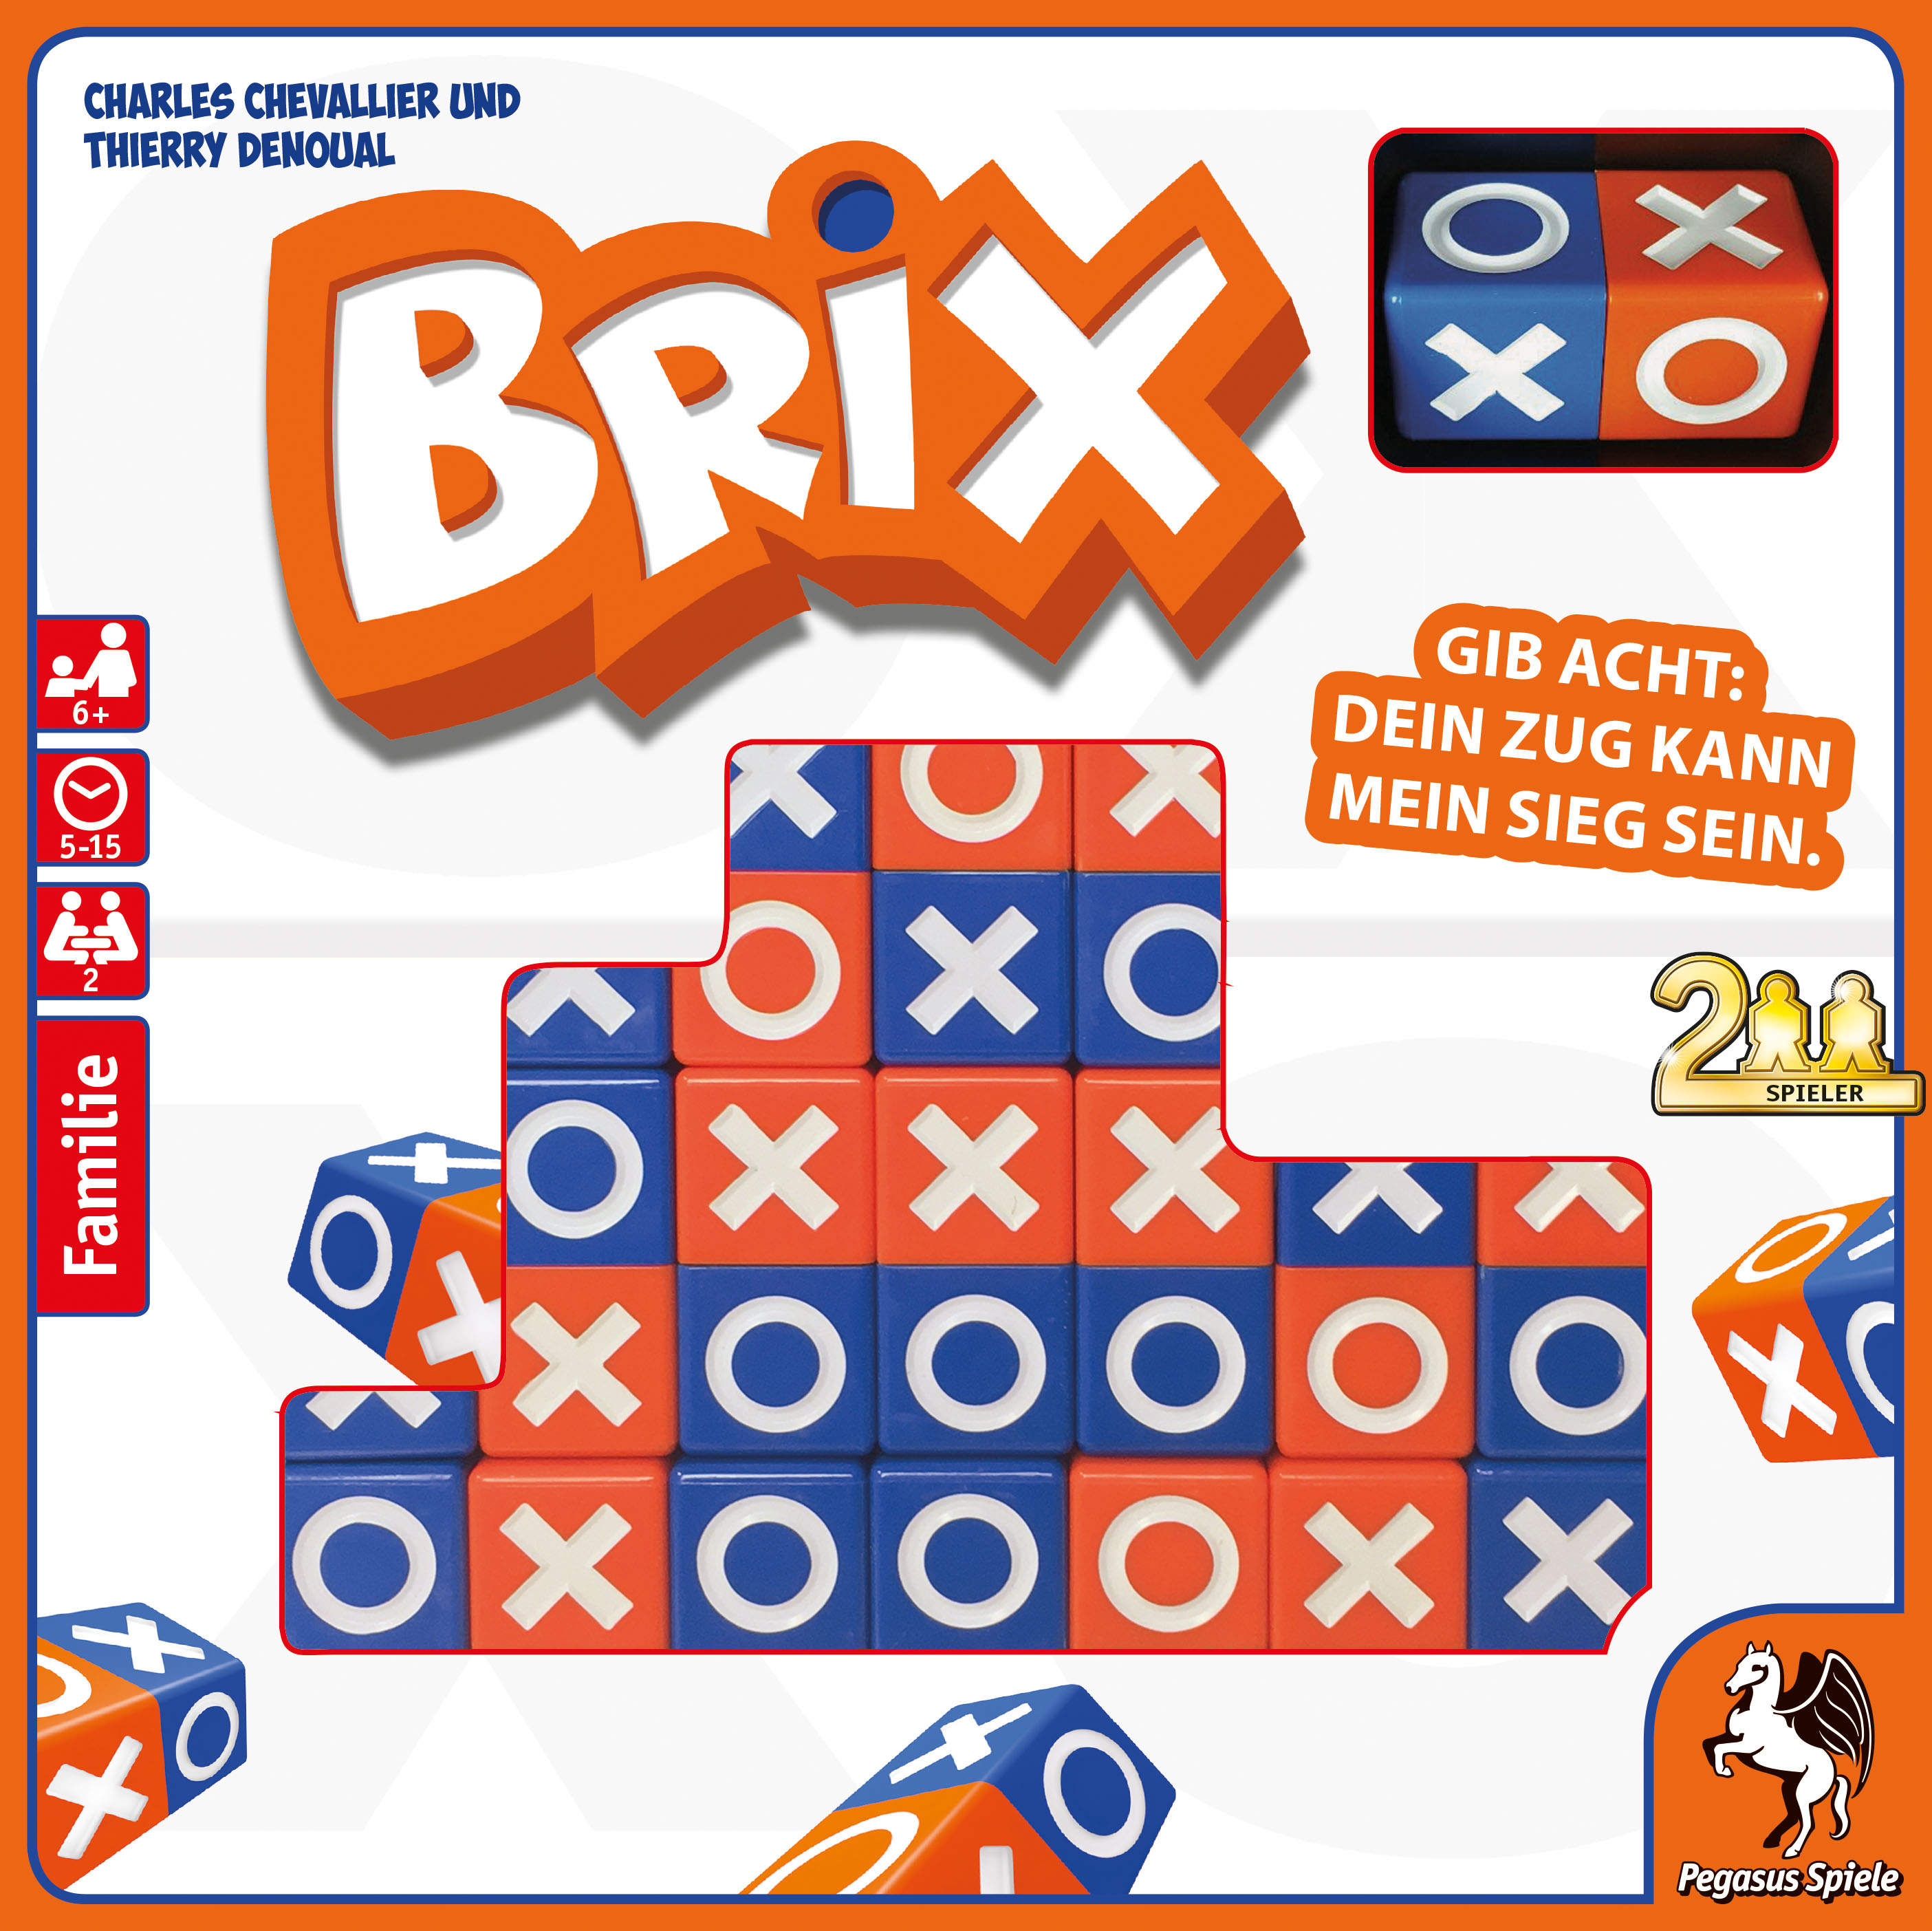 Gesellschaftsspiel “Brix” (2016)